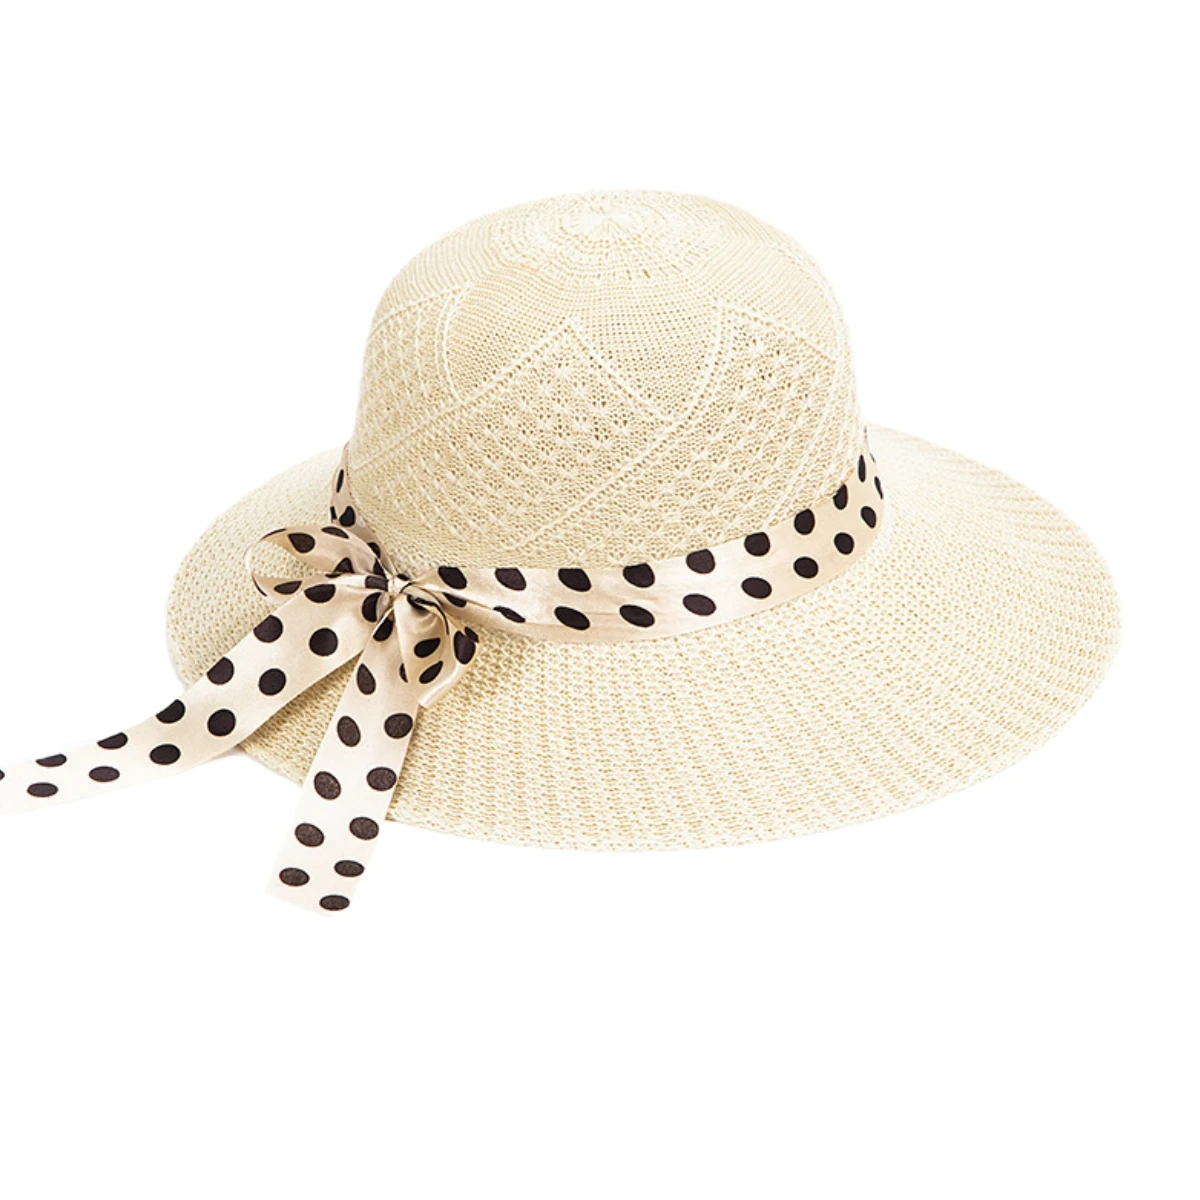 Topi pantai tepi lebar wanita, topi jerami dapat dilipat untuk perjalanan tepi pantai perempuan perlindungan UV musim panas